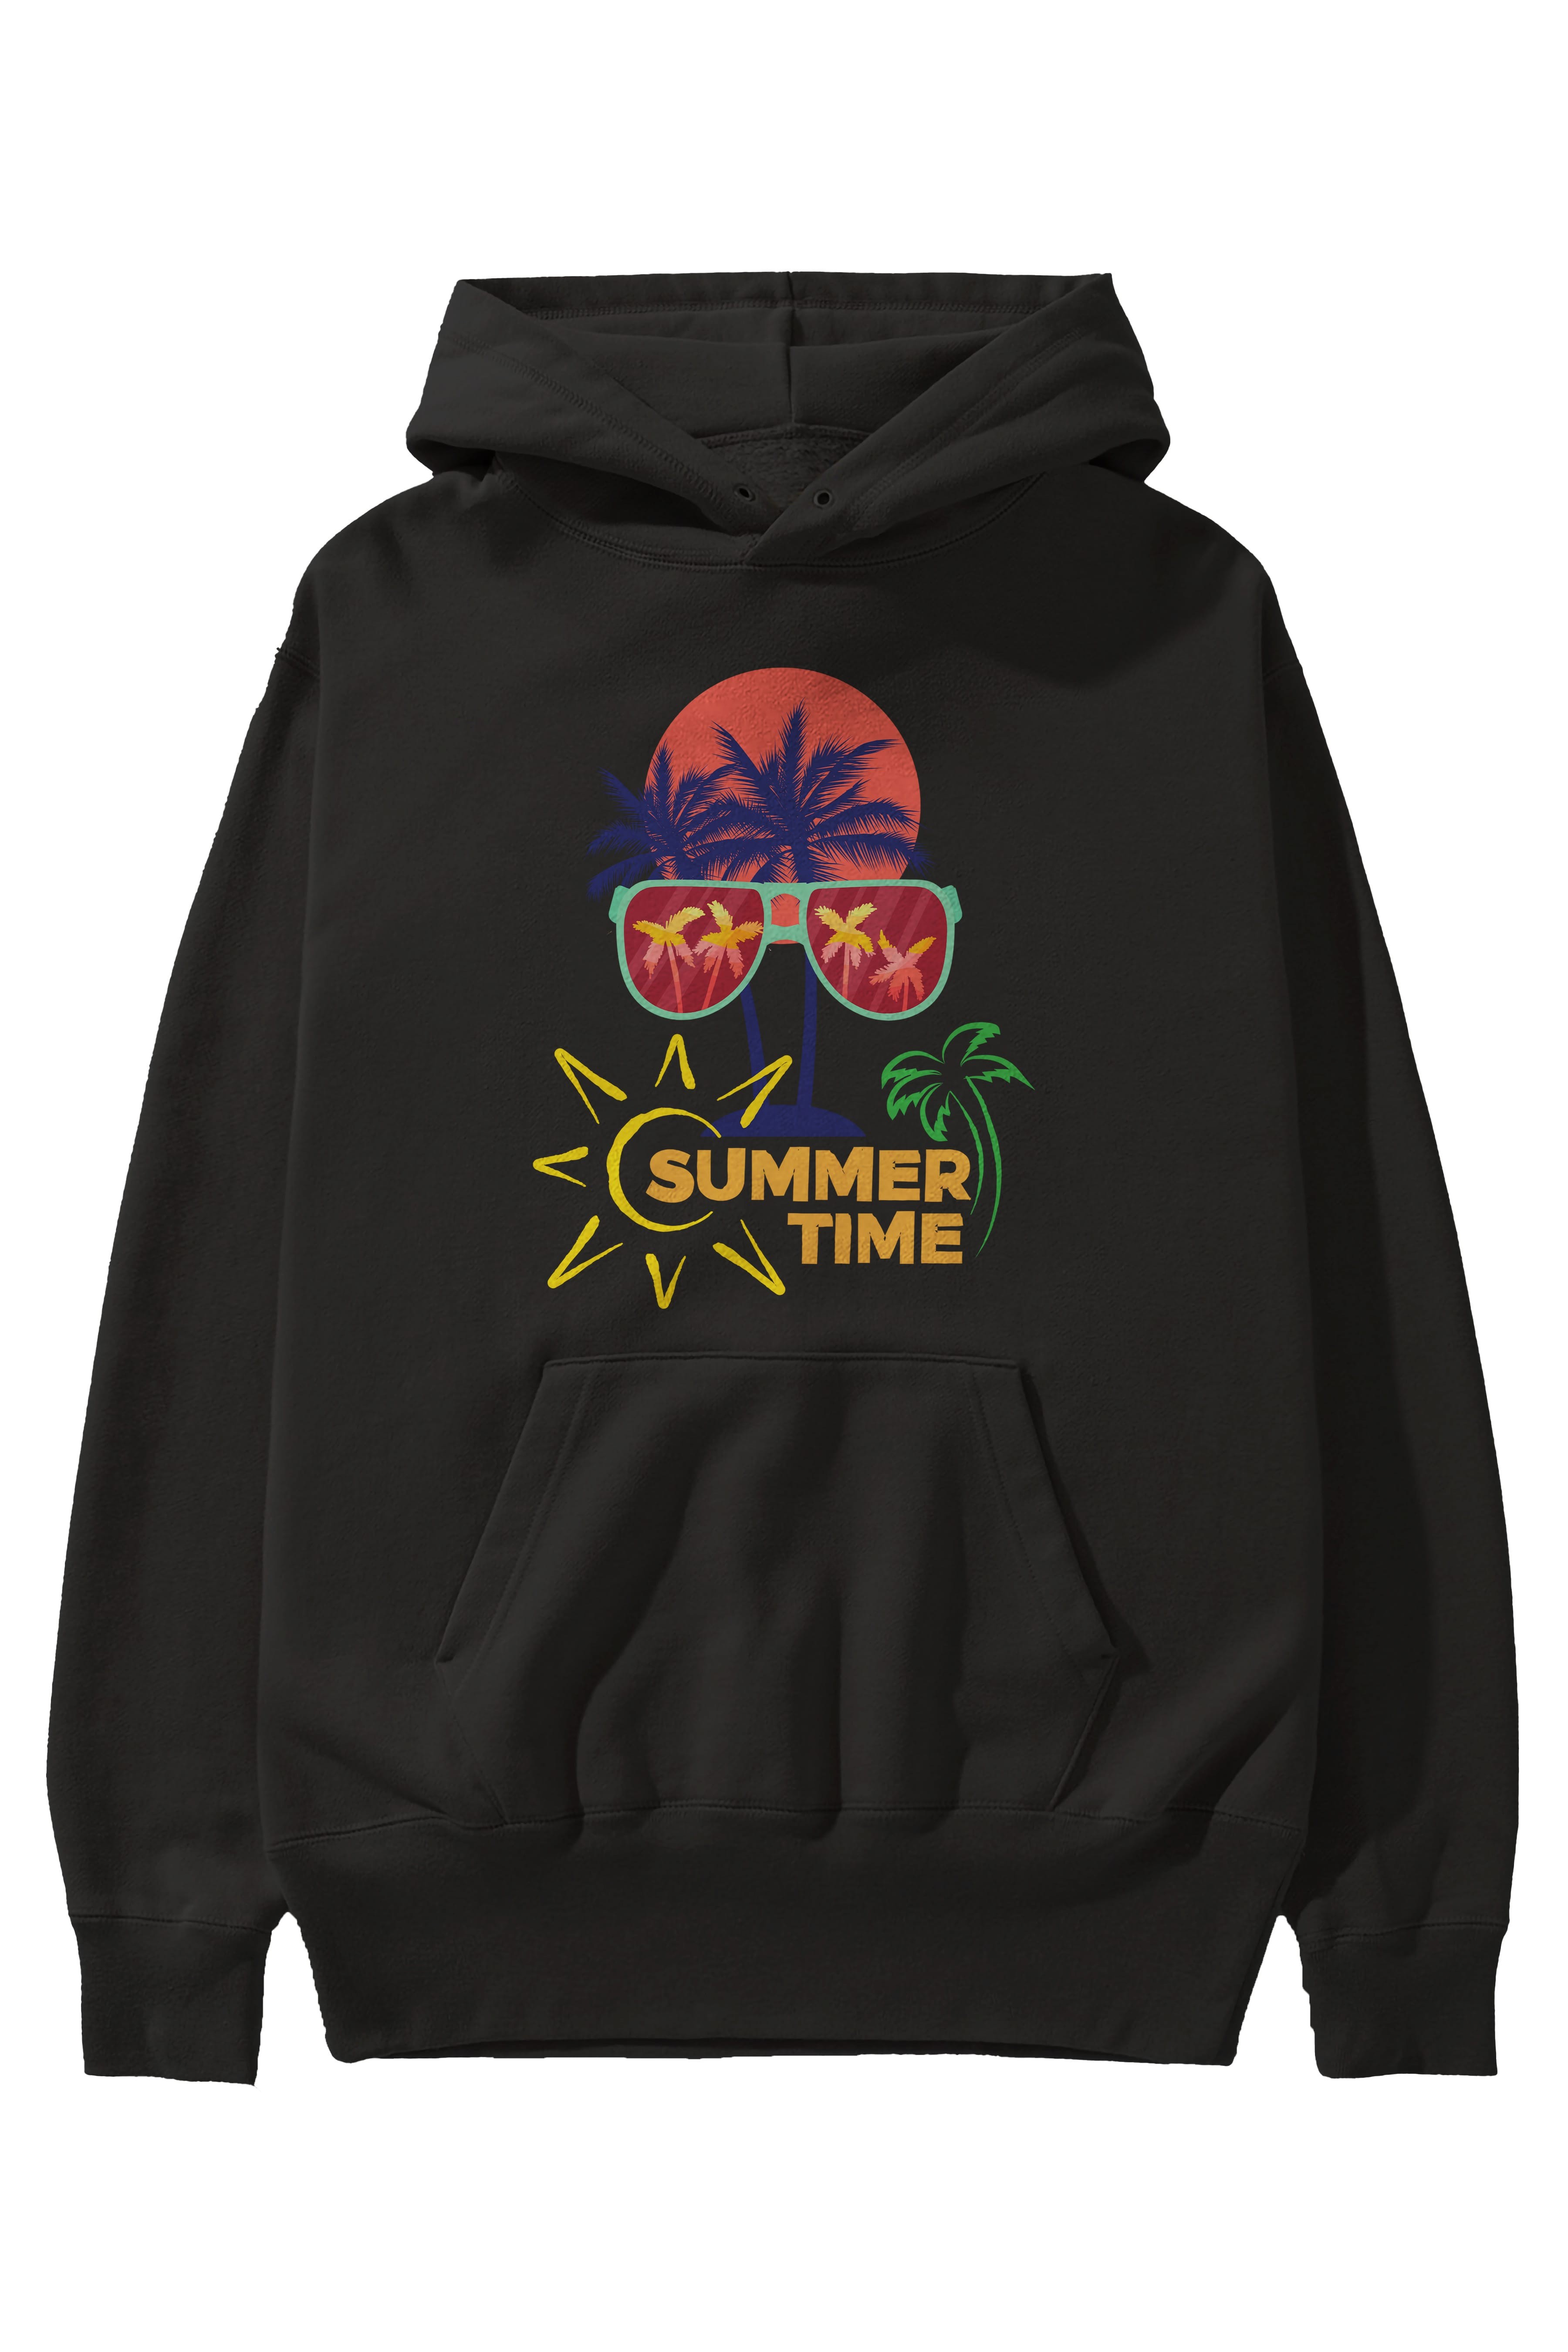 Summer Time Yazılı Ön Baskılı Oversize Hoodie Kapüşonlu Sweatshirt Erkek Kadın Unisex